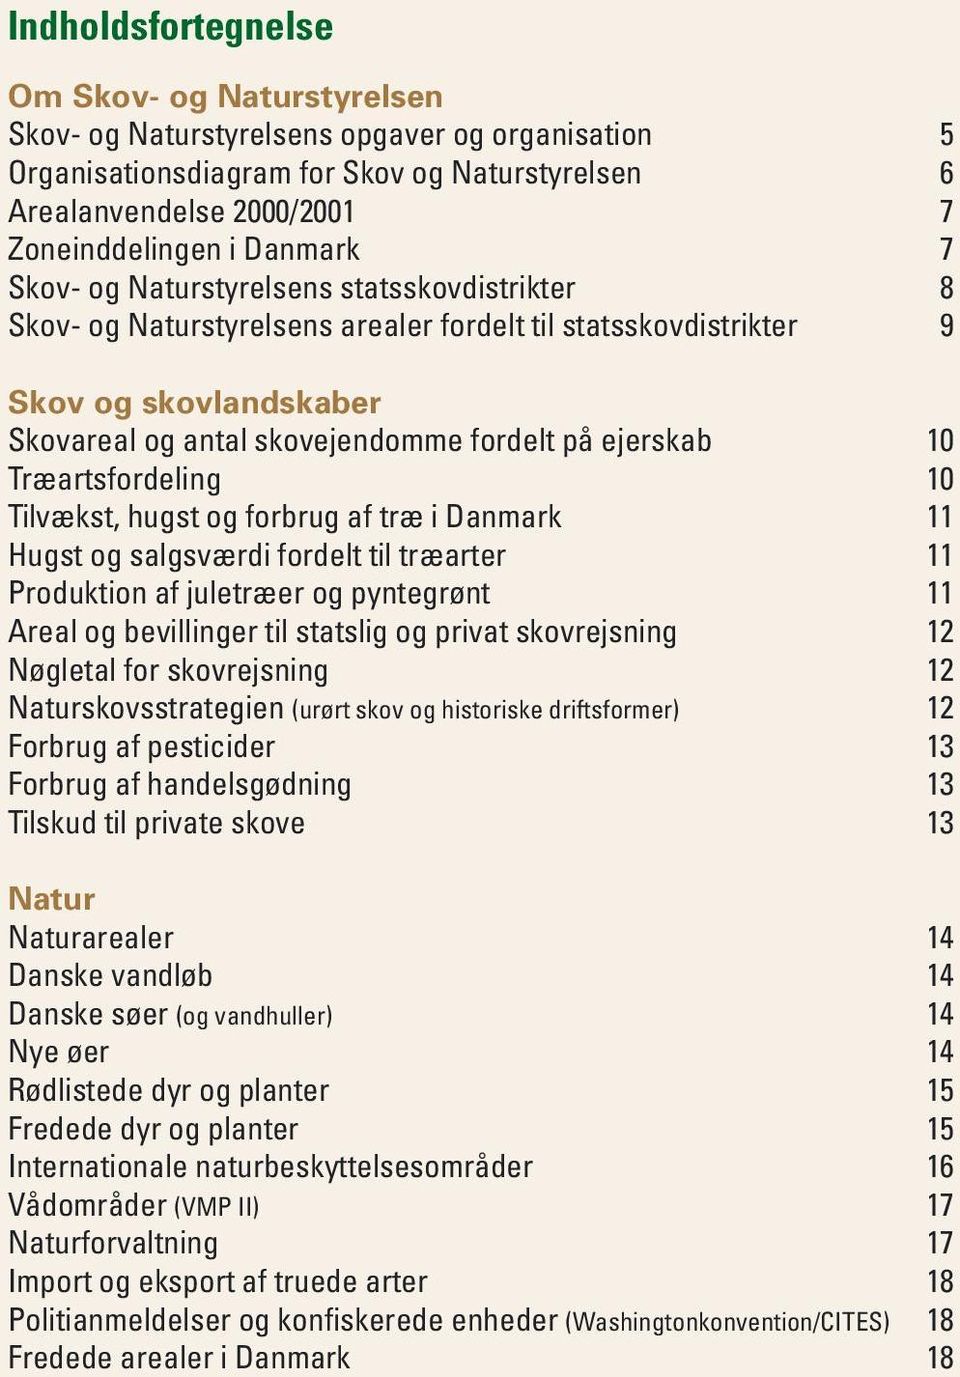 10 Træartsfordeling 10 Tilvækst, hugst og forbrug af træ i Danmark 11 Hugst og salgsværdi fordelt til træarter 11 Produktion af juletræer og pyntegrønt 11 Areal og bevillinger til statslig og privat